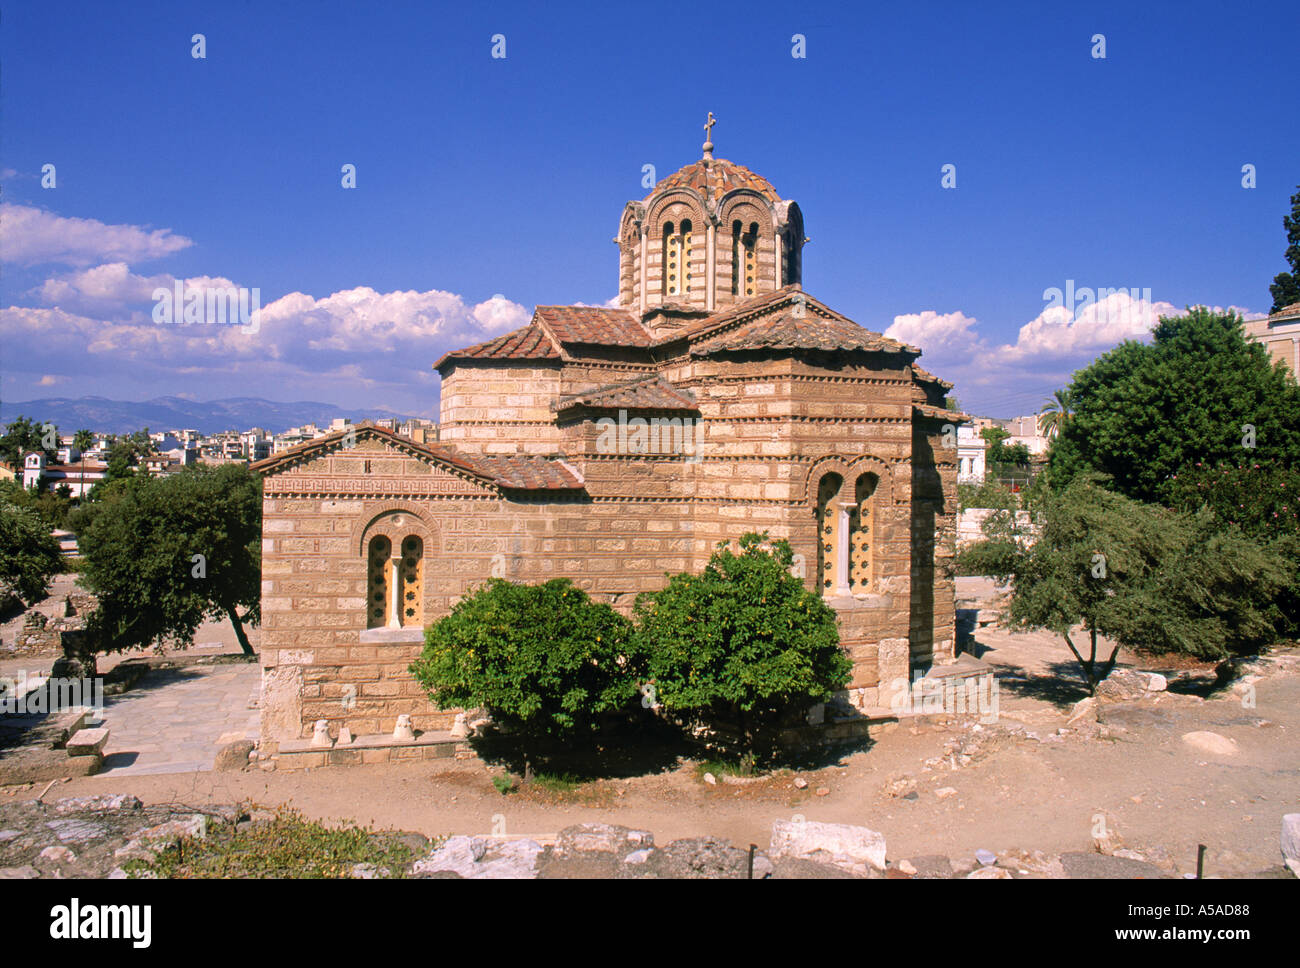 Ayioi Apostoli (Byzantine Church), Athens, Greece Stock Photo